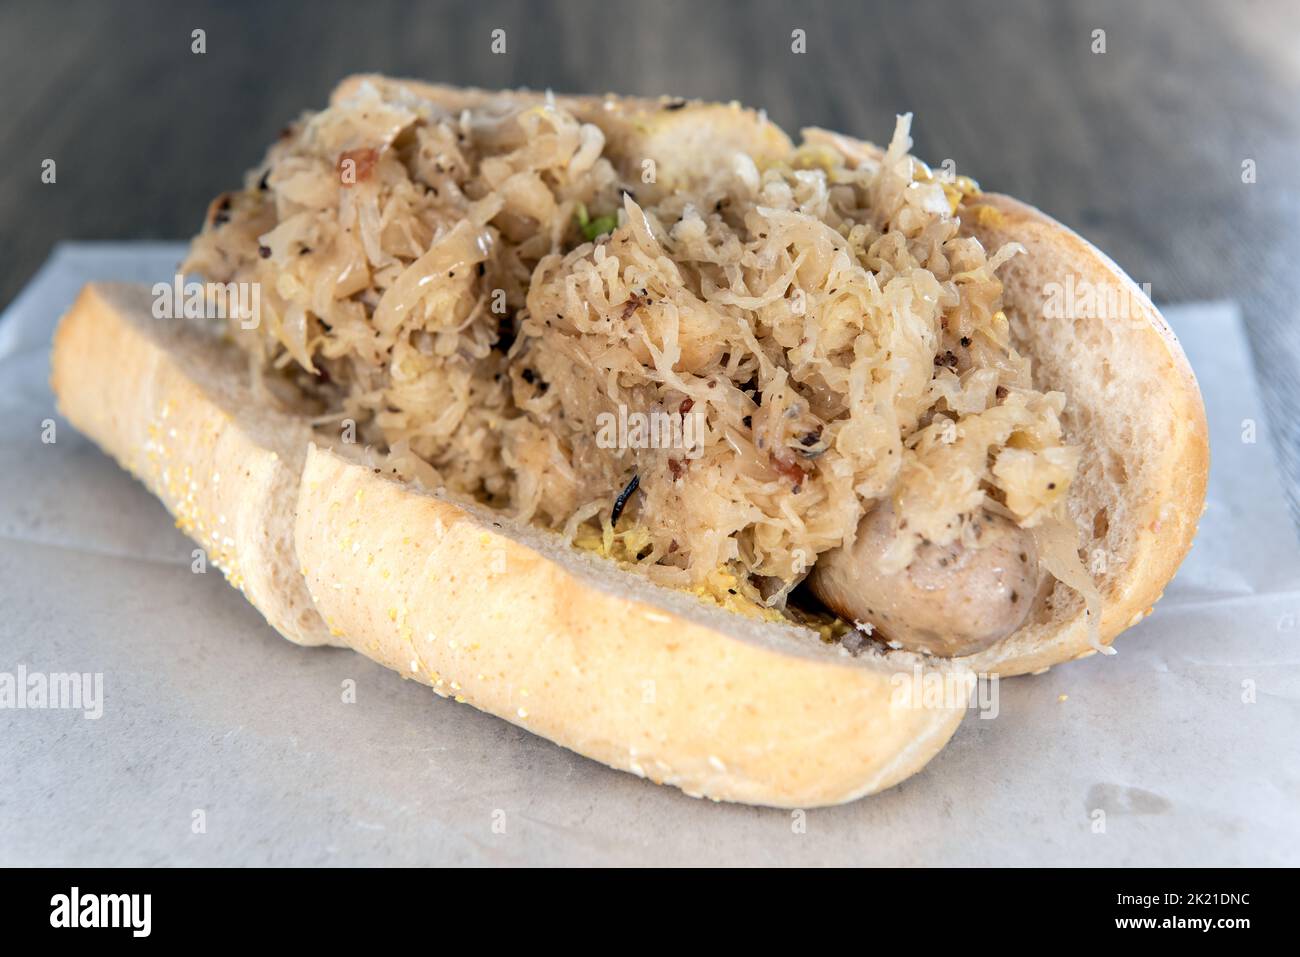 Das Mittagessen wird mit einer geladenen Bratwurst und einem Sauerkraut-Sandwich serviert, das mit Zutaten überfüllt ist. Stockfoto